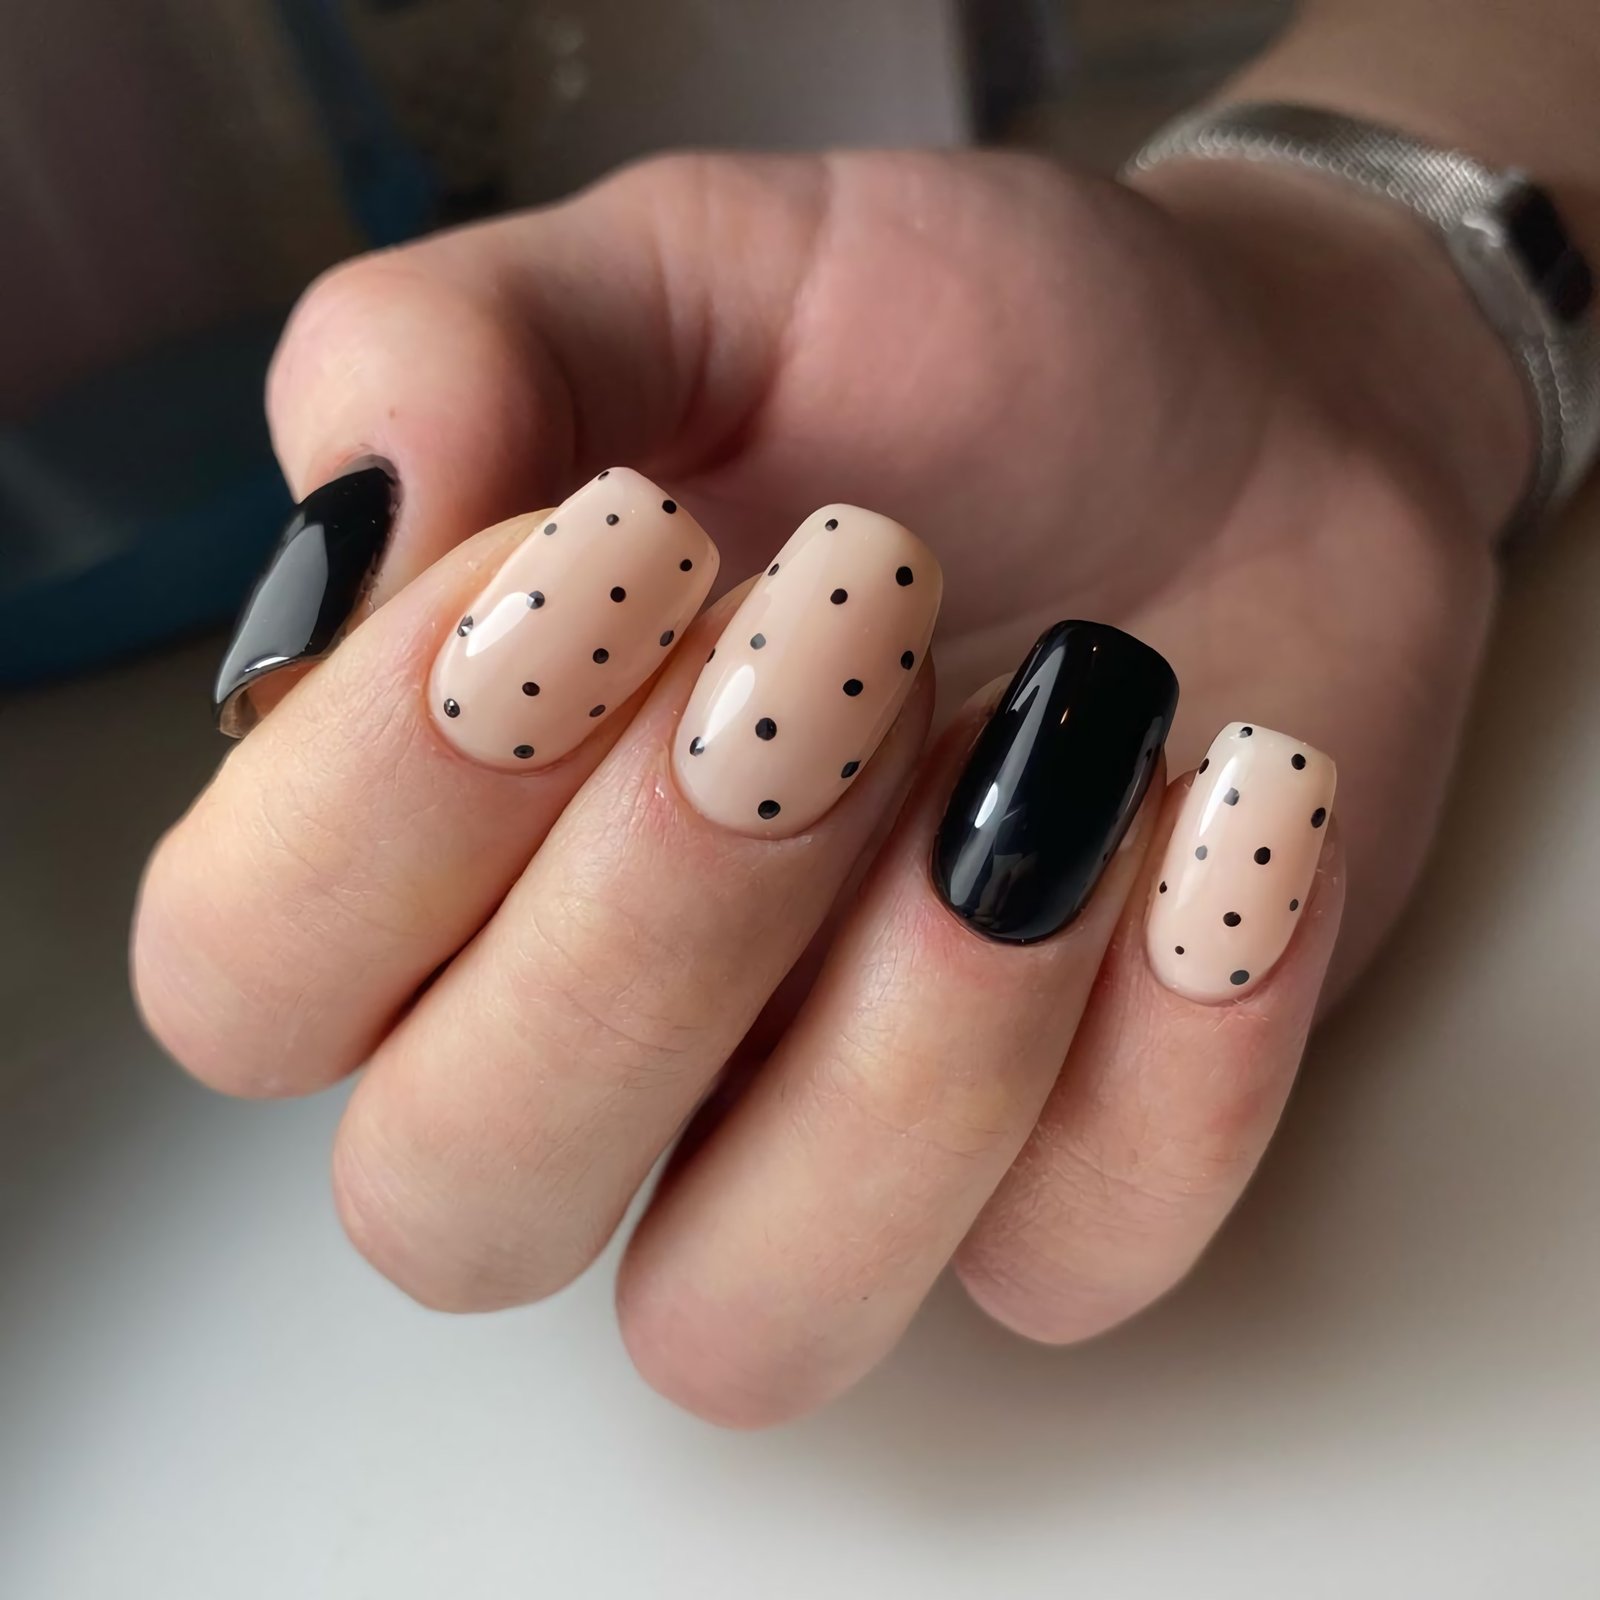 красивые короткие ногти с точками